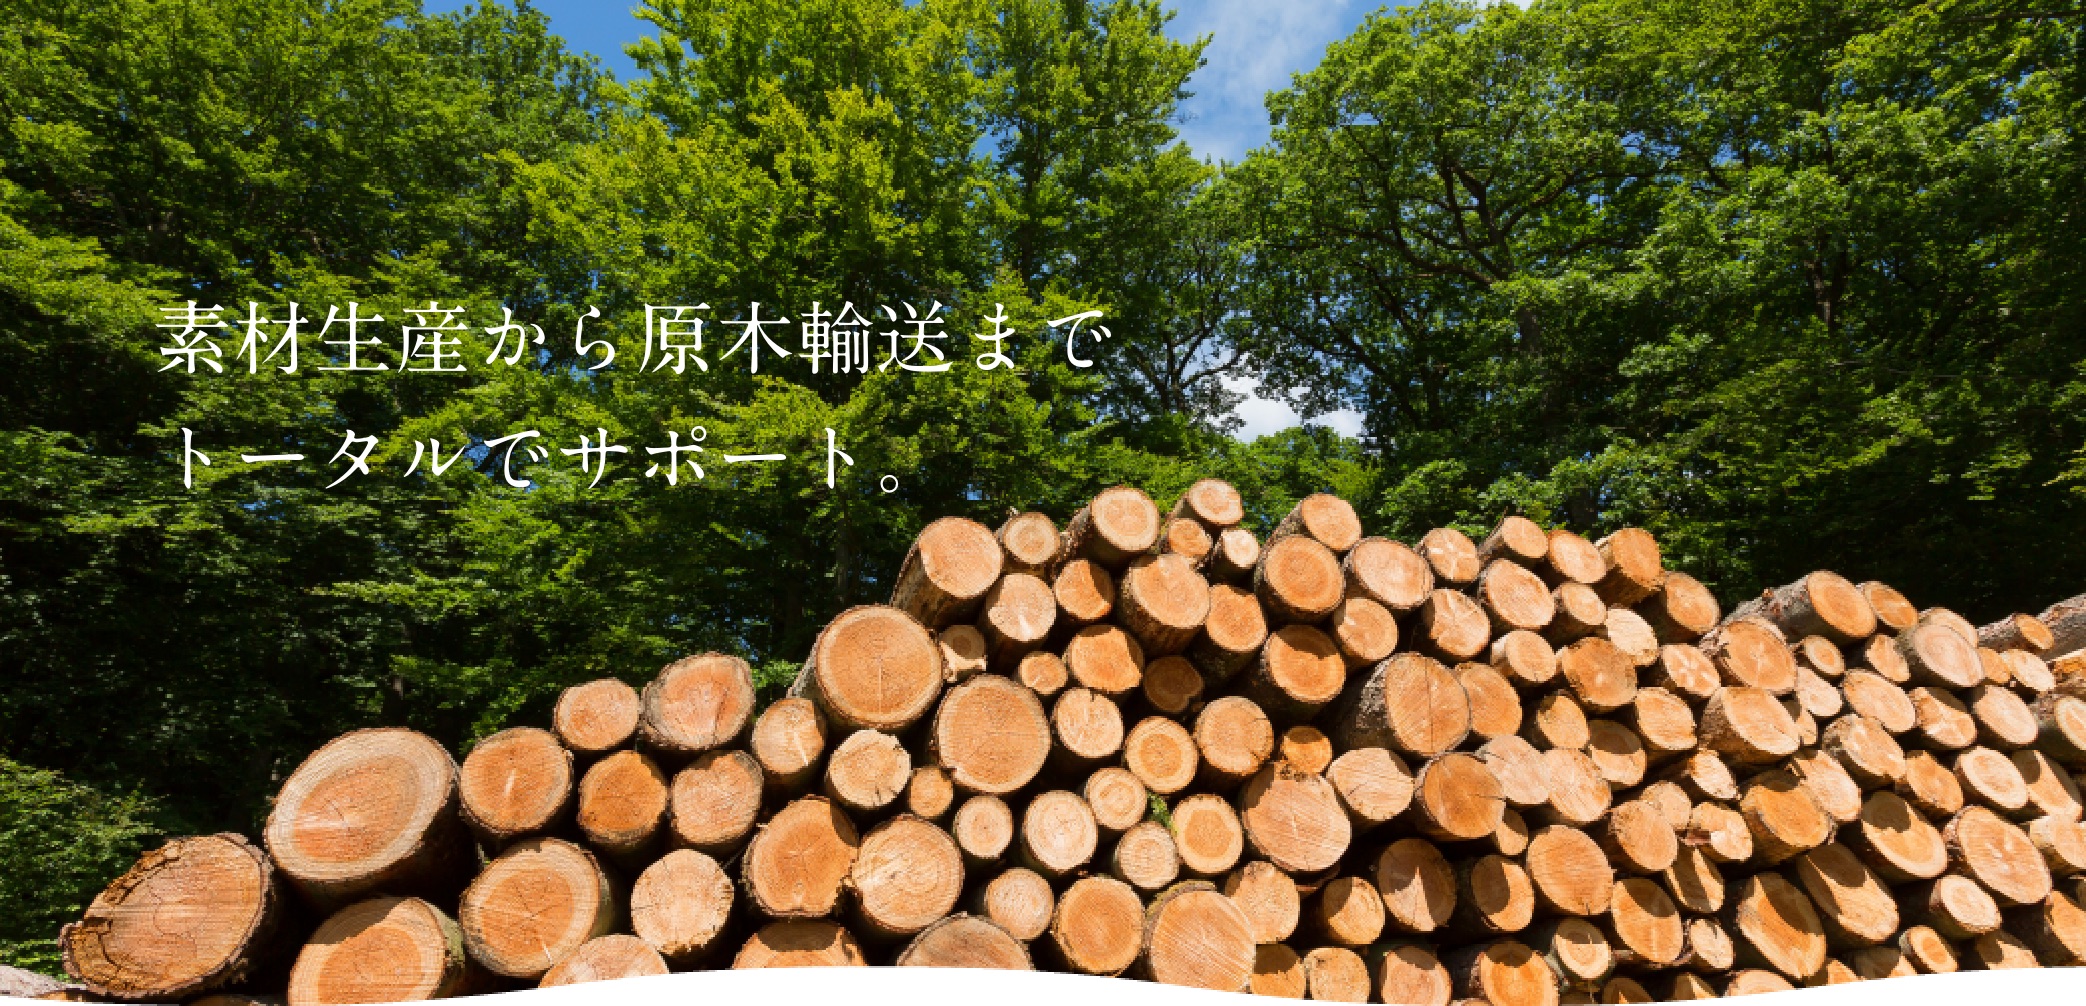 素材生産から原木輸送までトータルでサポート。